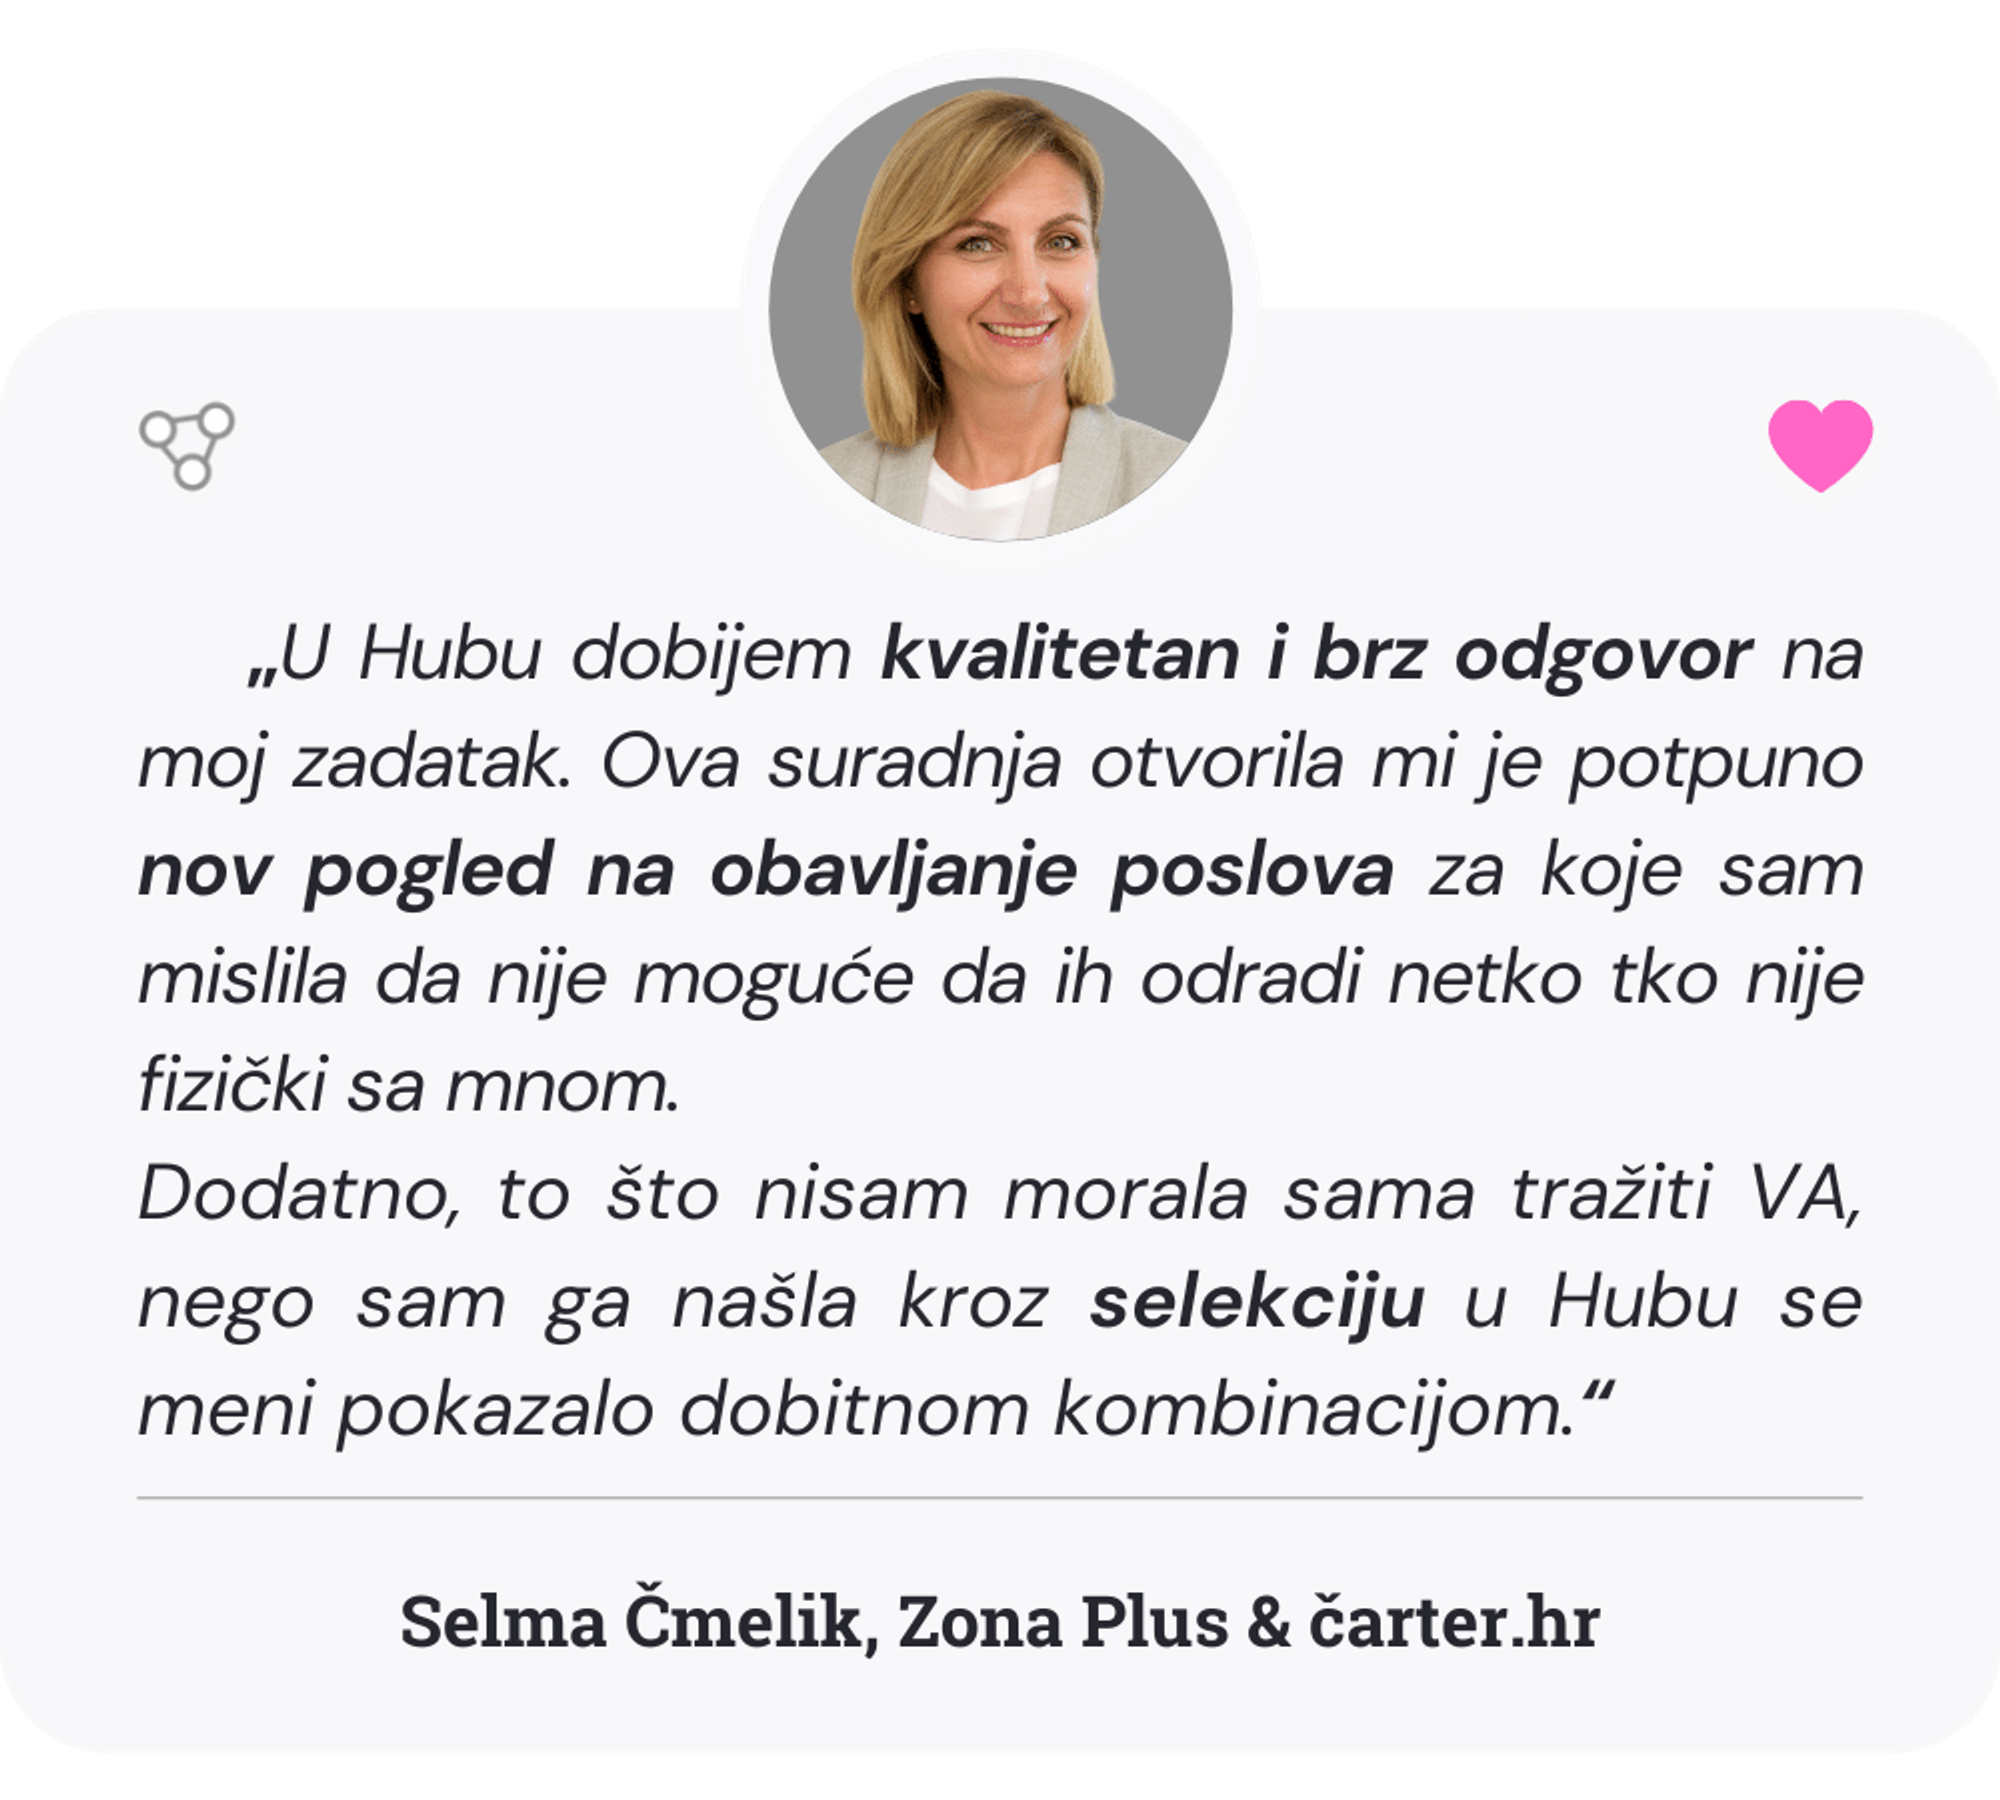 Selma Čmelik vlasnica je agencije za digitalni marketing Zona plus i pokretačica portala čarter.hr. Asistenti Go2human Huba Selmi pomažu kod izrade i prenamjene sadržaja za web.